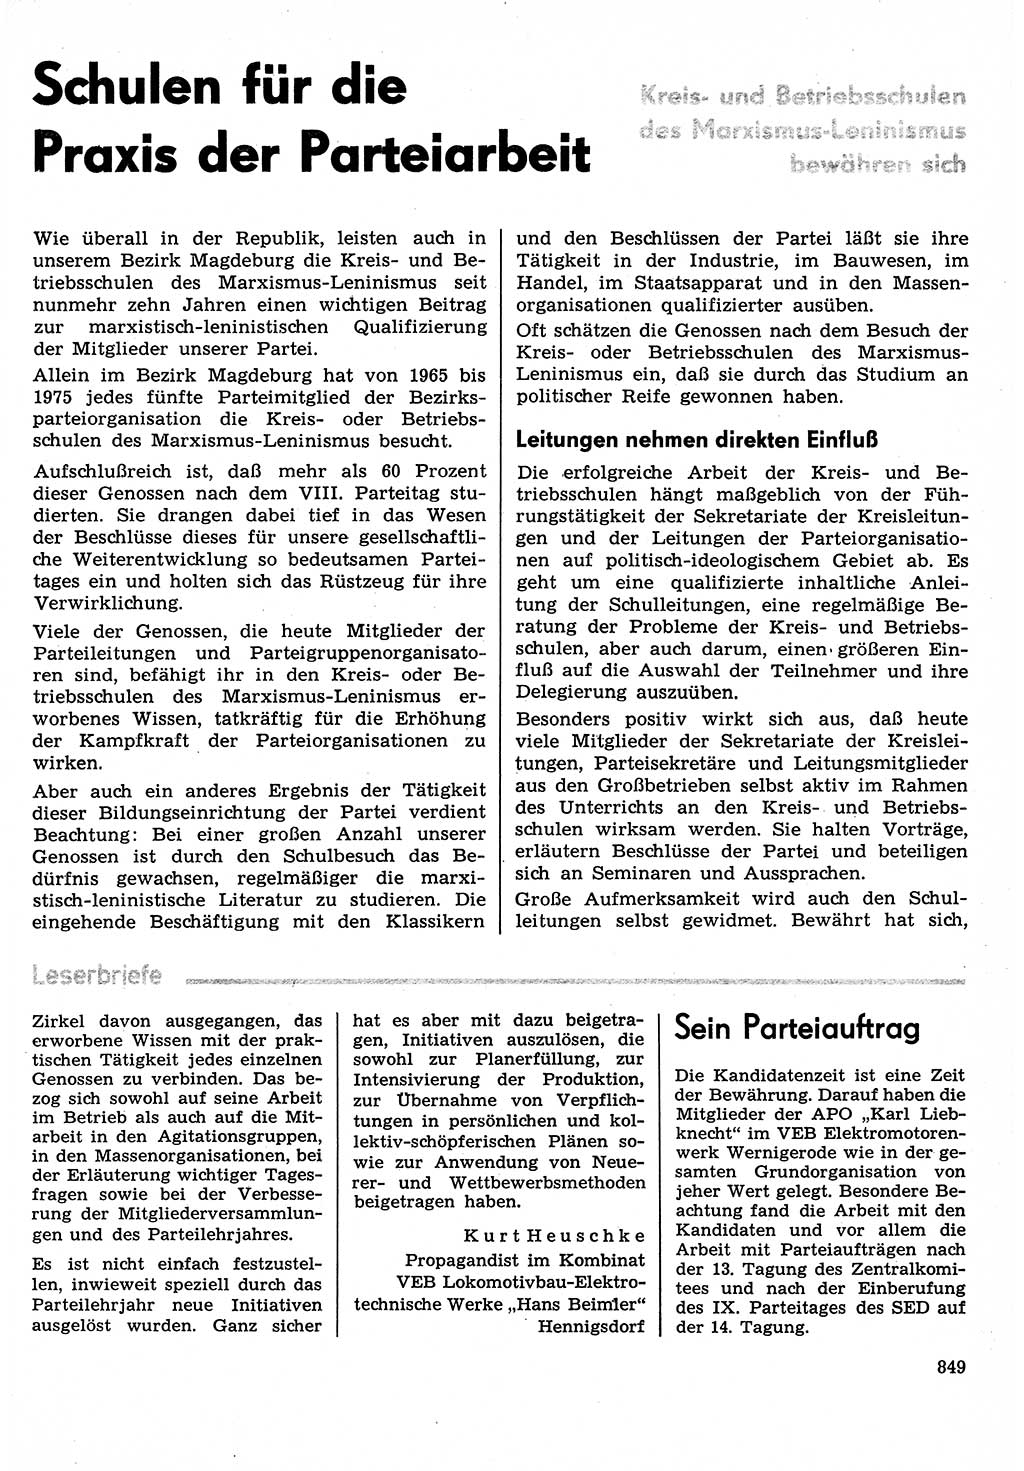 Neuer Weg (NW), Organ des Zentralkomitees (ZK) der SED (Sozialistische Einheitspartei Deutschlands) für Fragen des Parteilebens, 30. Jahrgang [Deutsche Demokratische Republik (DDR)] 1975, Seite 849 (NW ZK SED DDR 1975, S. 849)